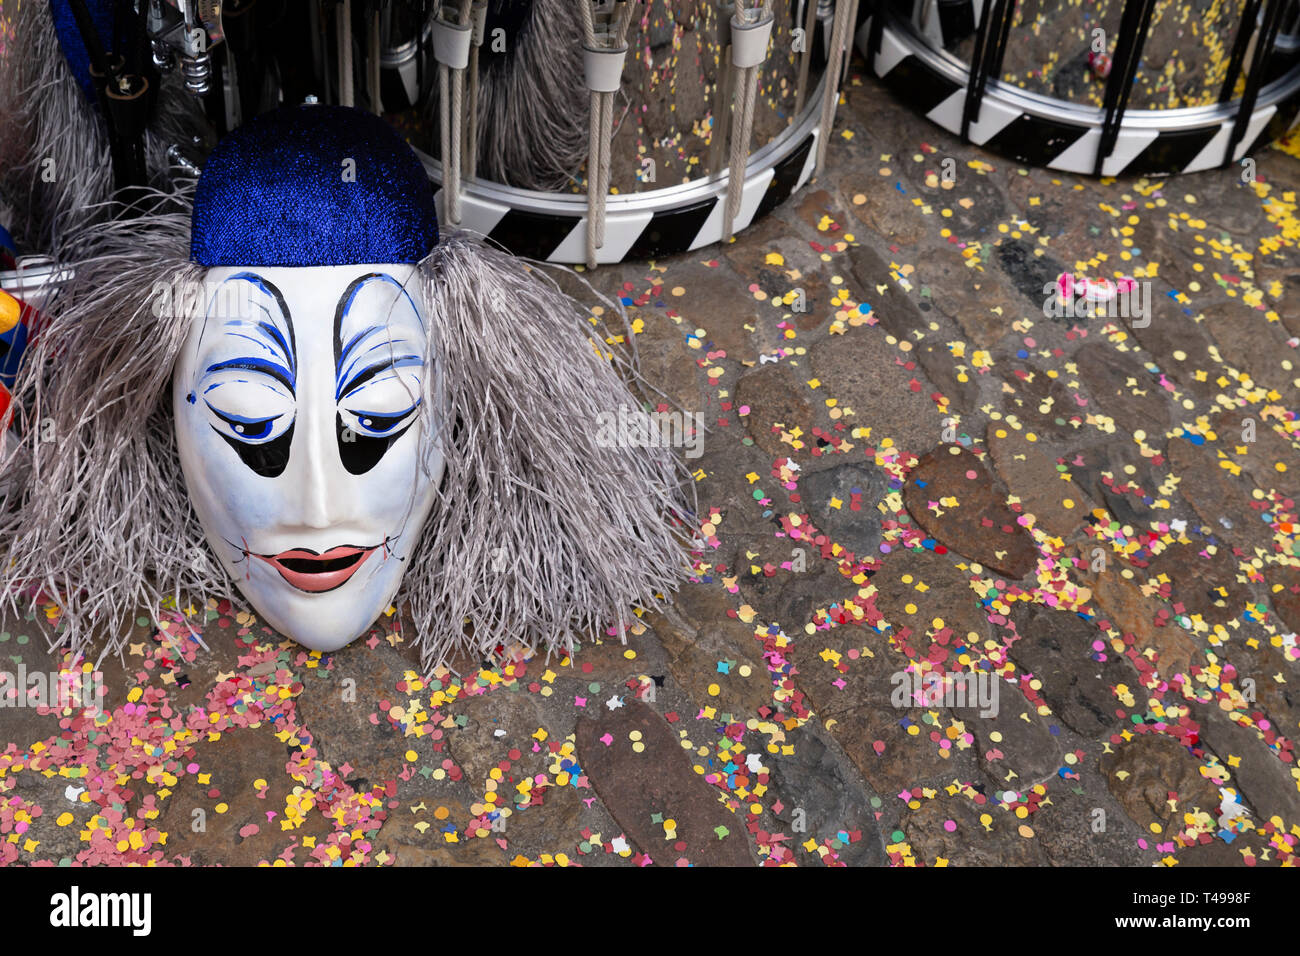 Augustinergasse, Bâle, Suisse - Mars 12th, 2019. Close-up d'un masque de carnaval et caisse claire sur une rue couverte de confettis Banque D'Images